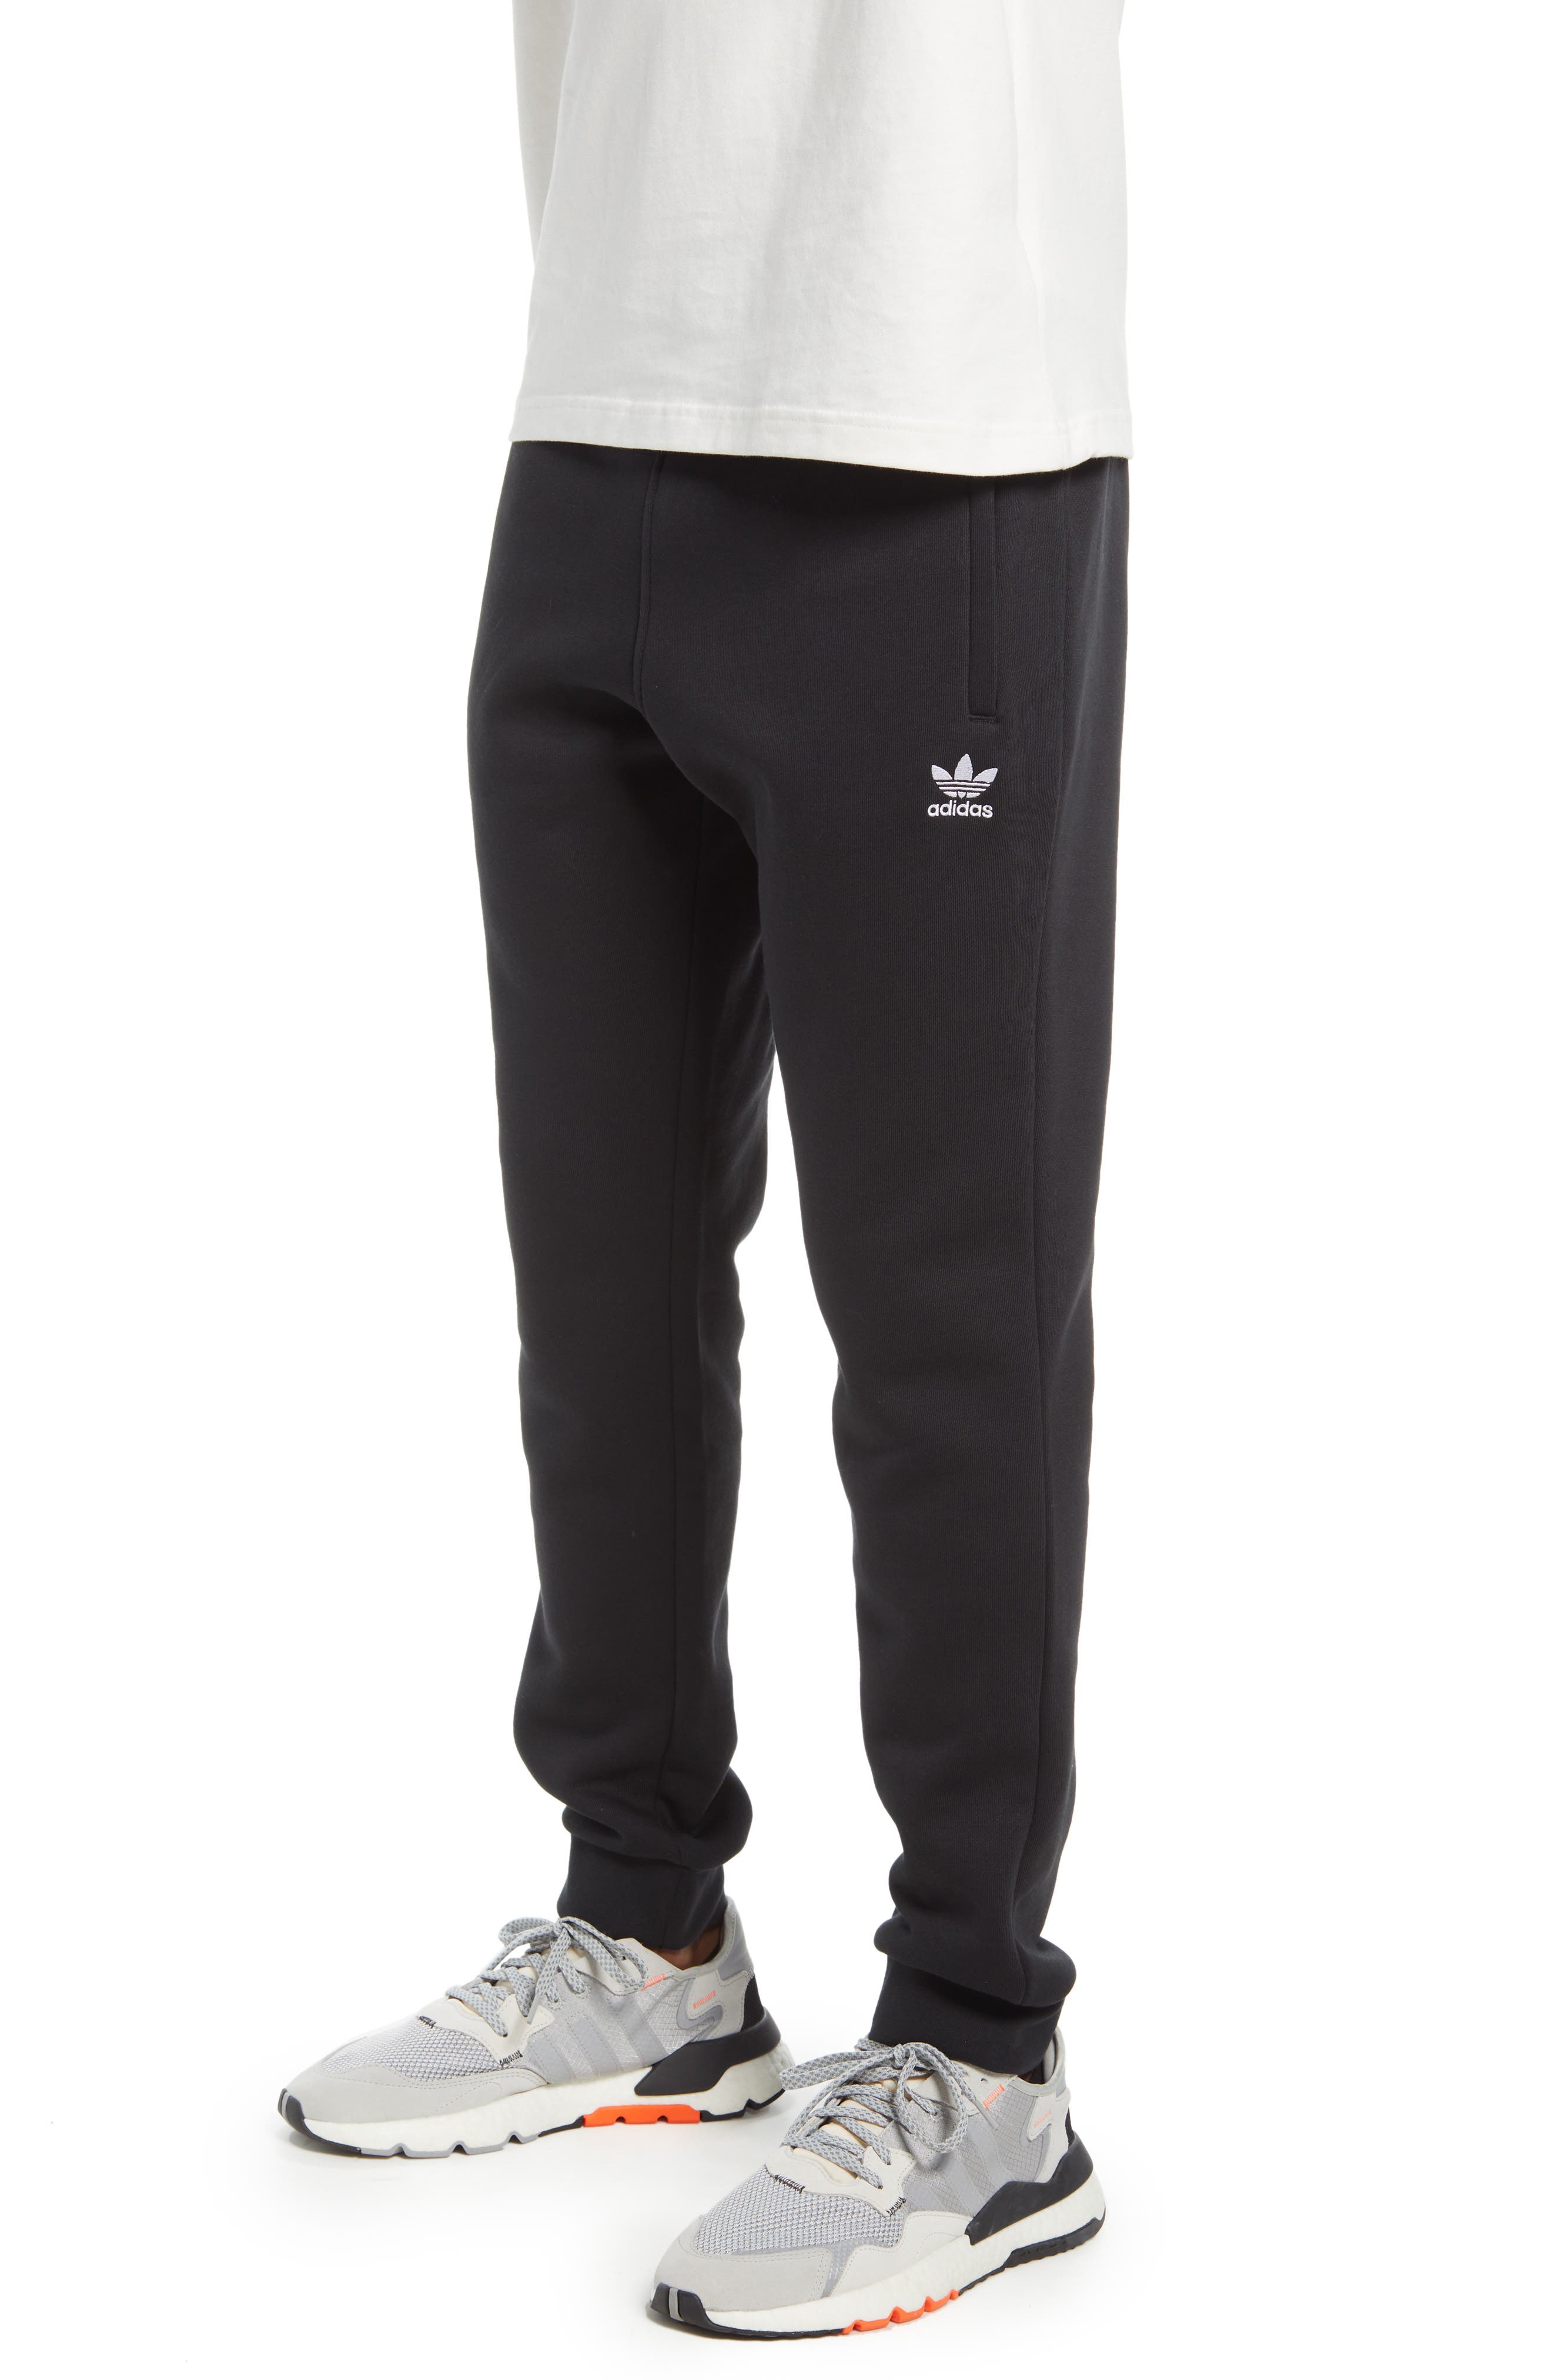 Adidas Originals Men's Trefoil Essentials Pants - Black - Xs